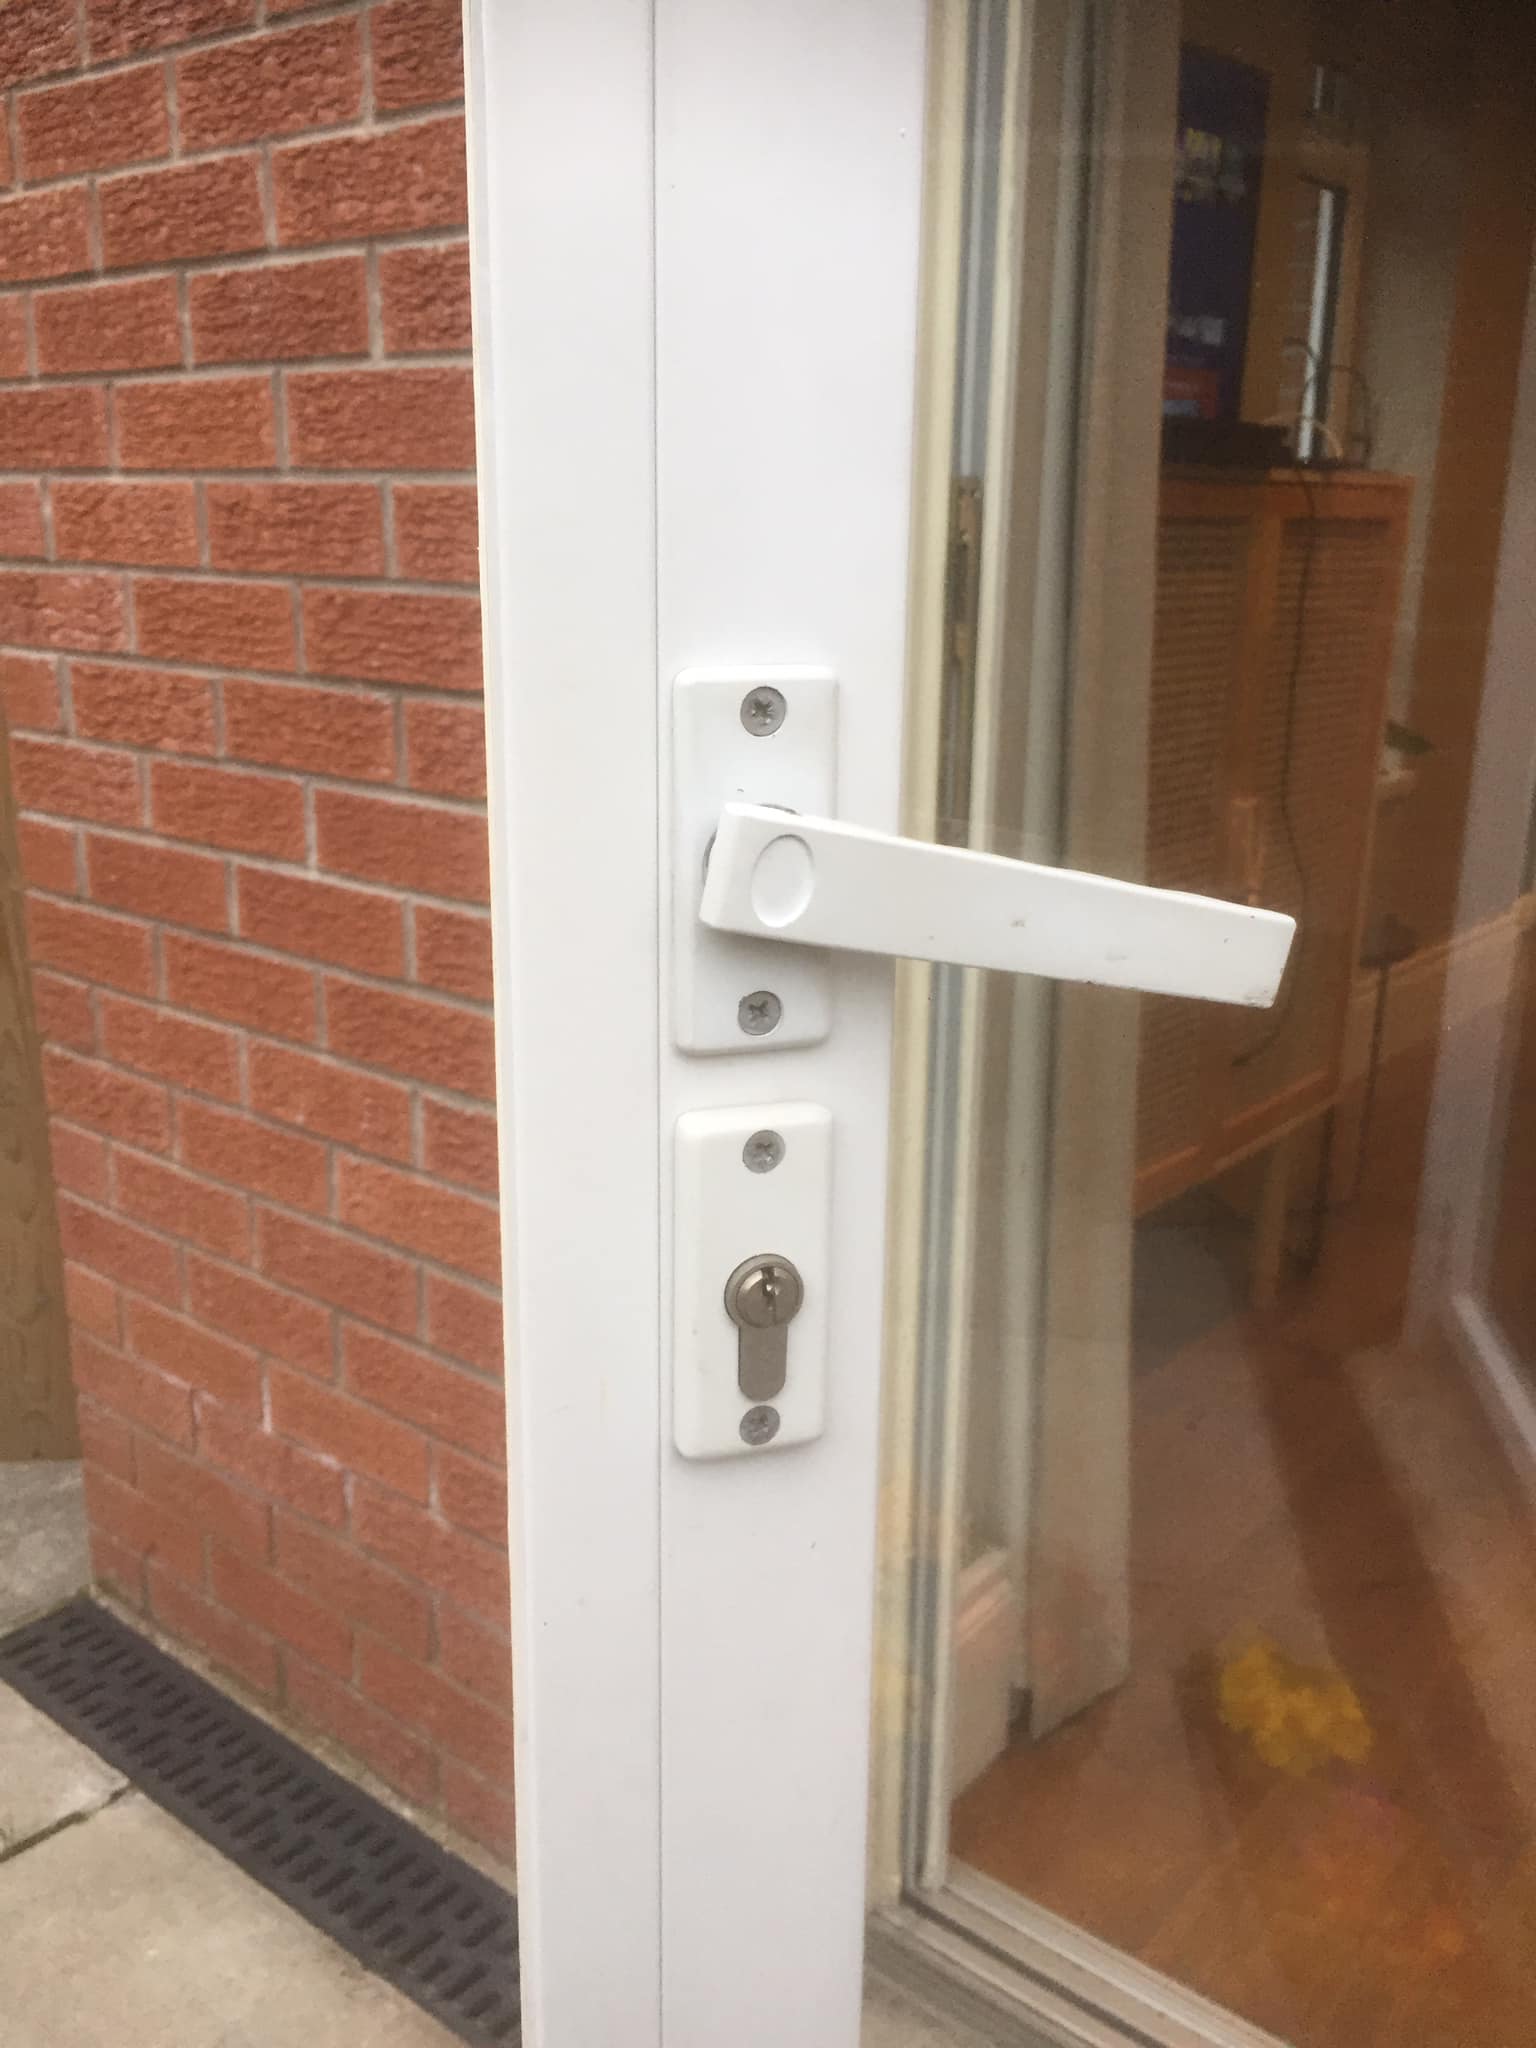 New door handle for patio doors